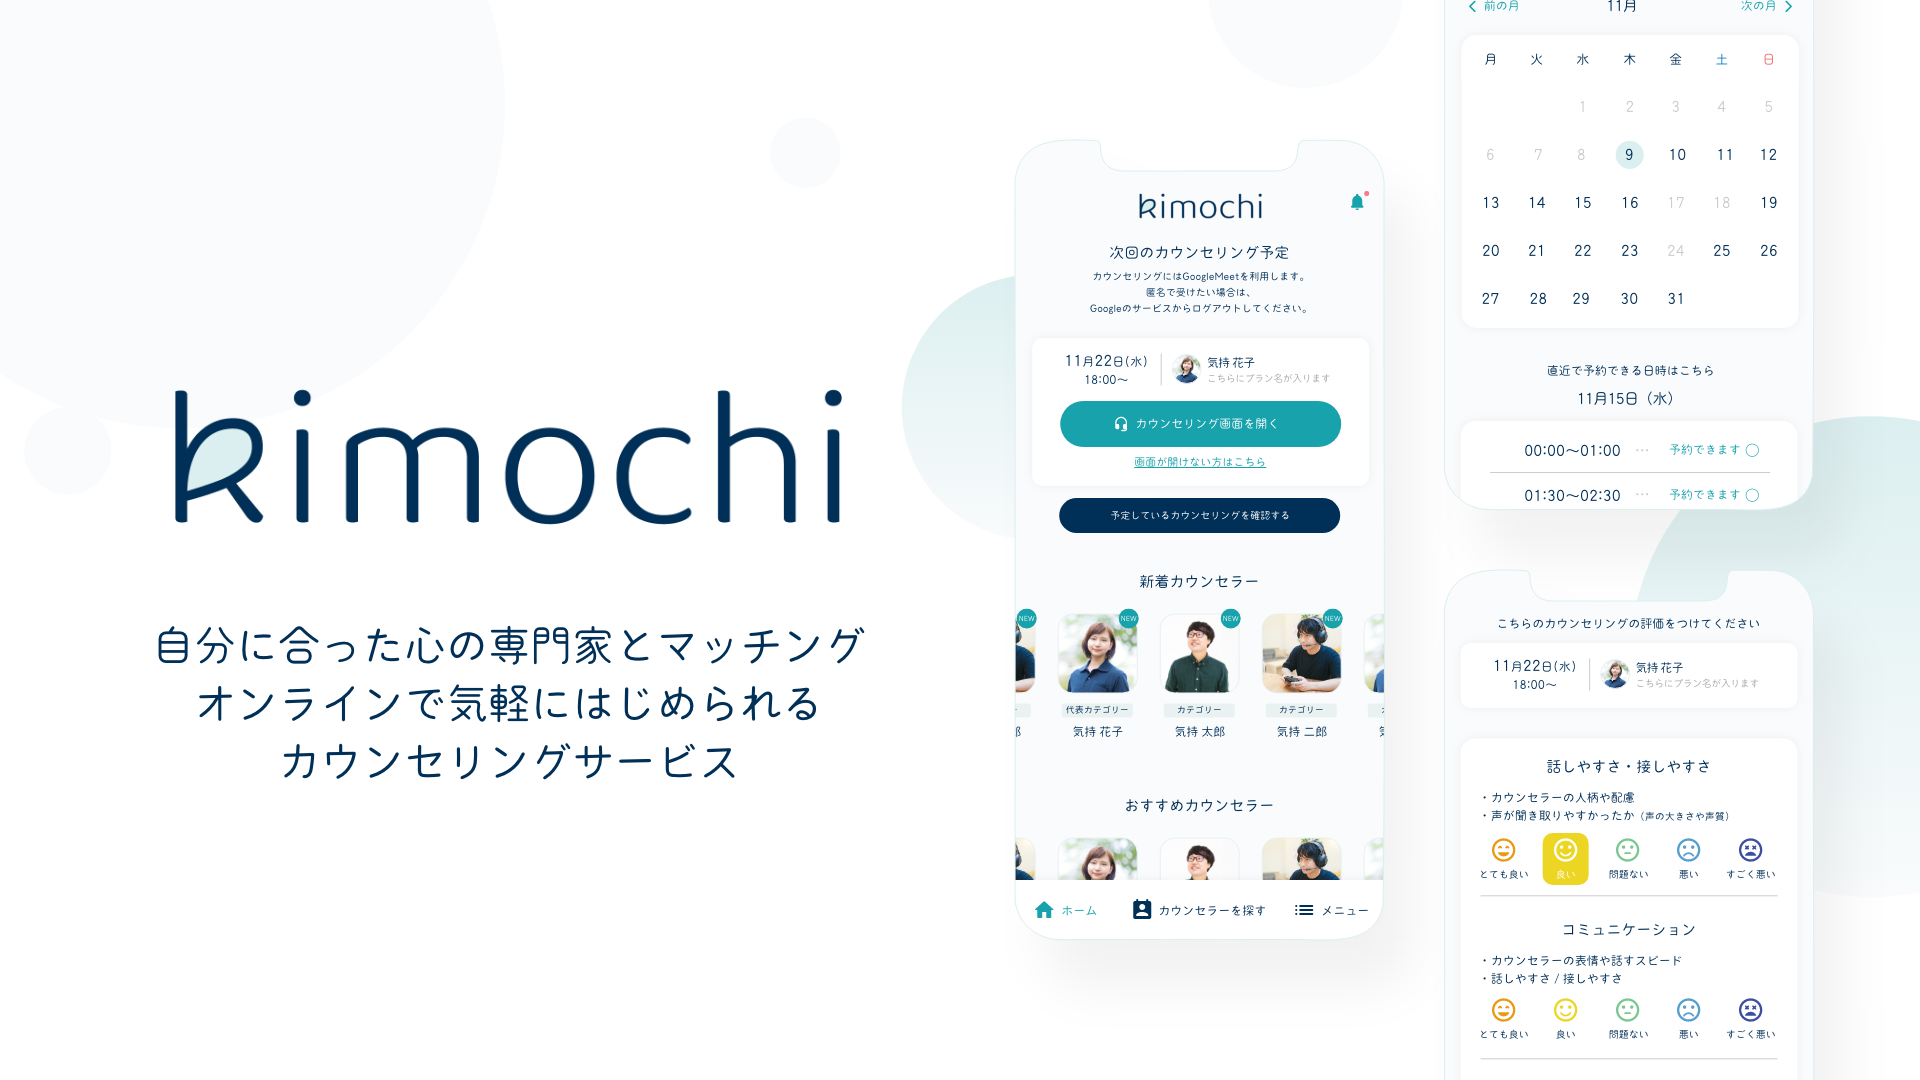 オンラインカウンセリング「Kimochi」がサービスリリースから2ヶ月後に 